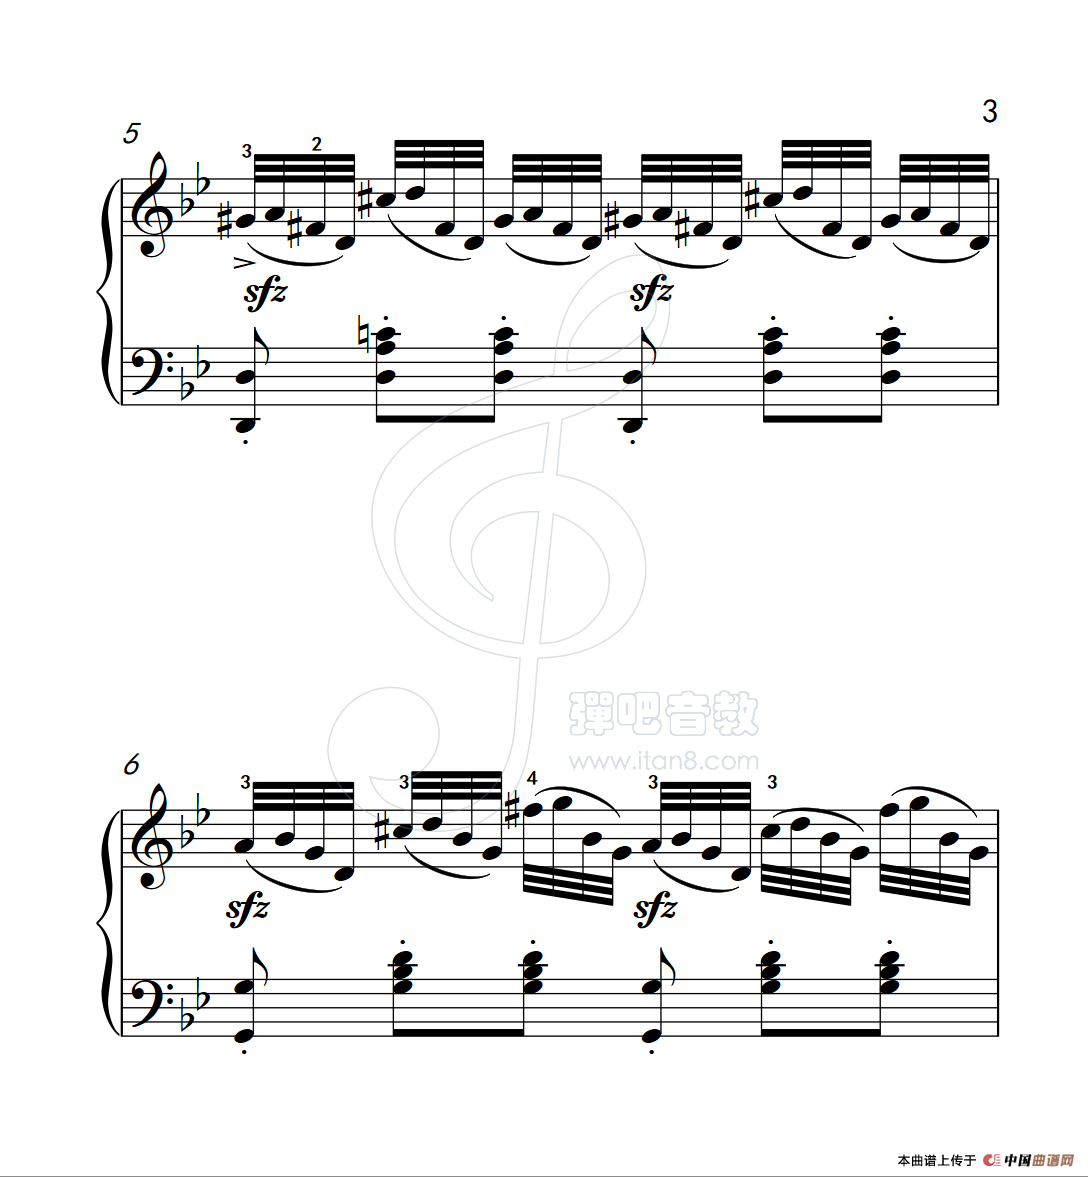 《练习曲 21》钢琴曲谱图分享